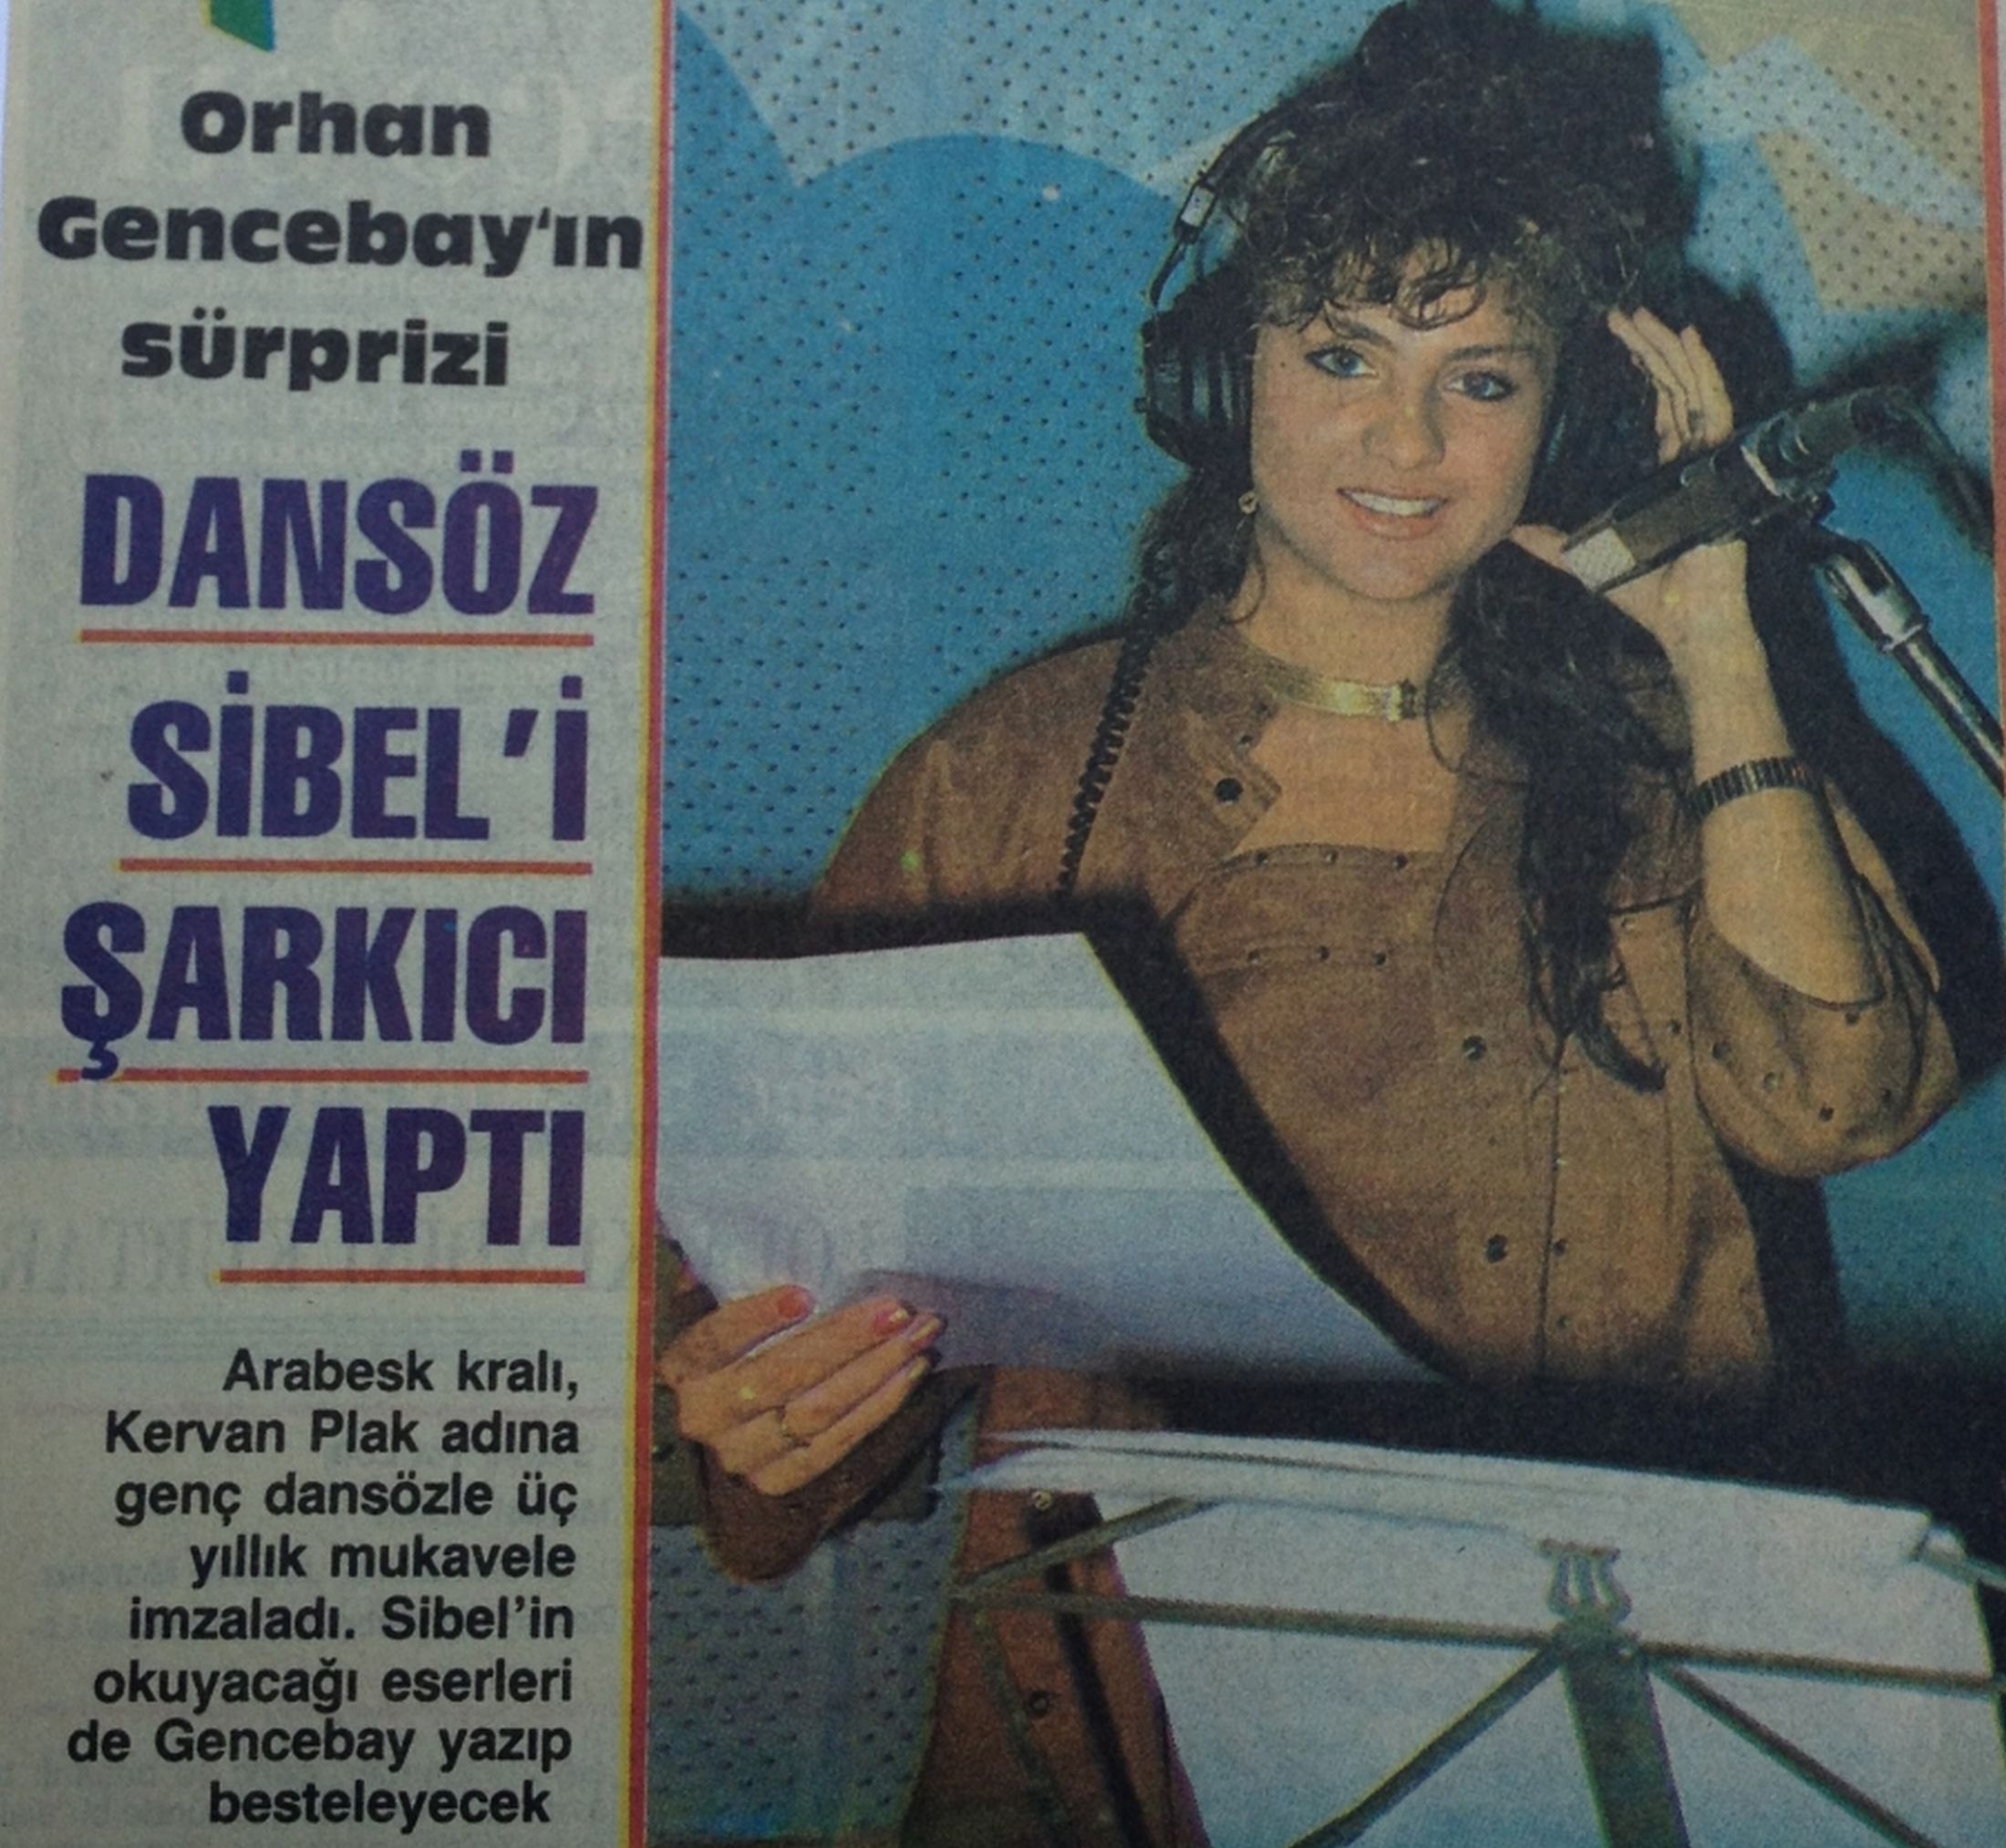 Orhan Gencebay, Dansöz Sibel'i Şarkıcı Yaptı!